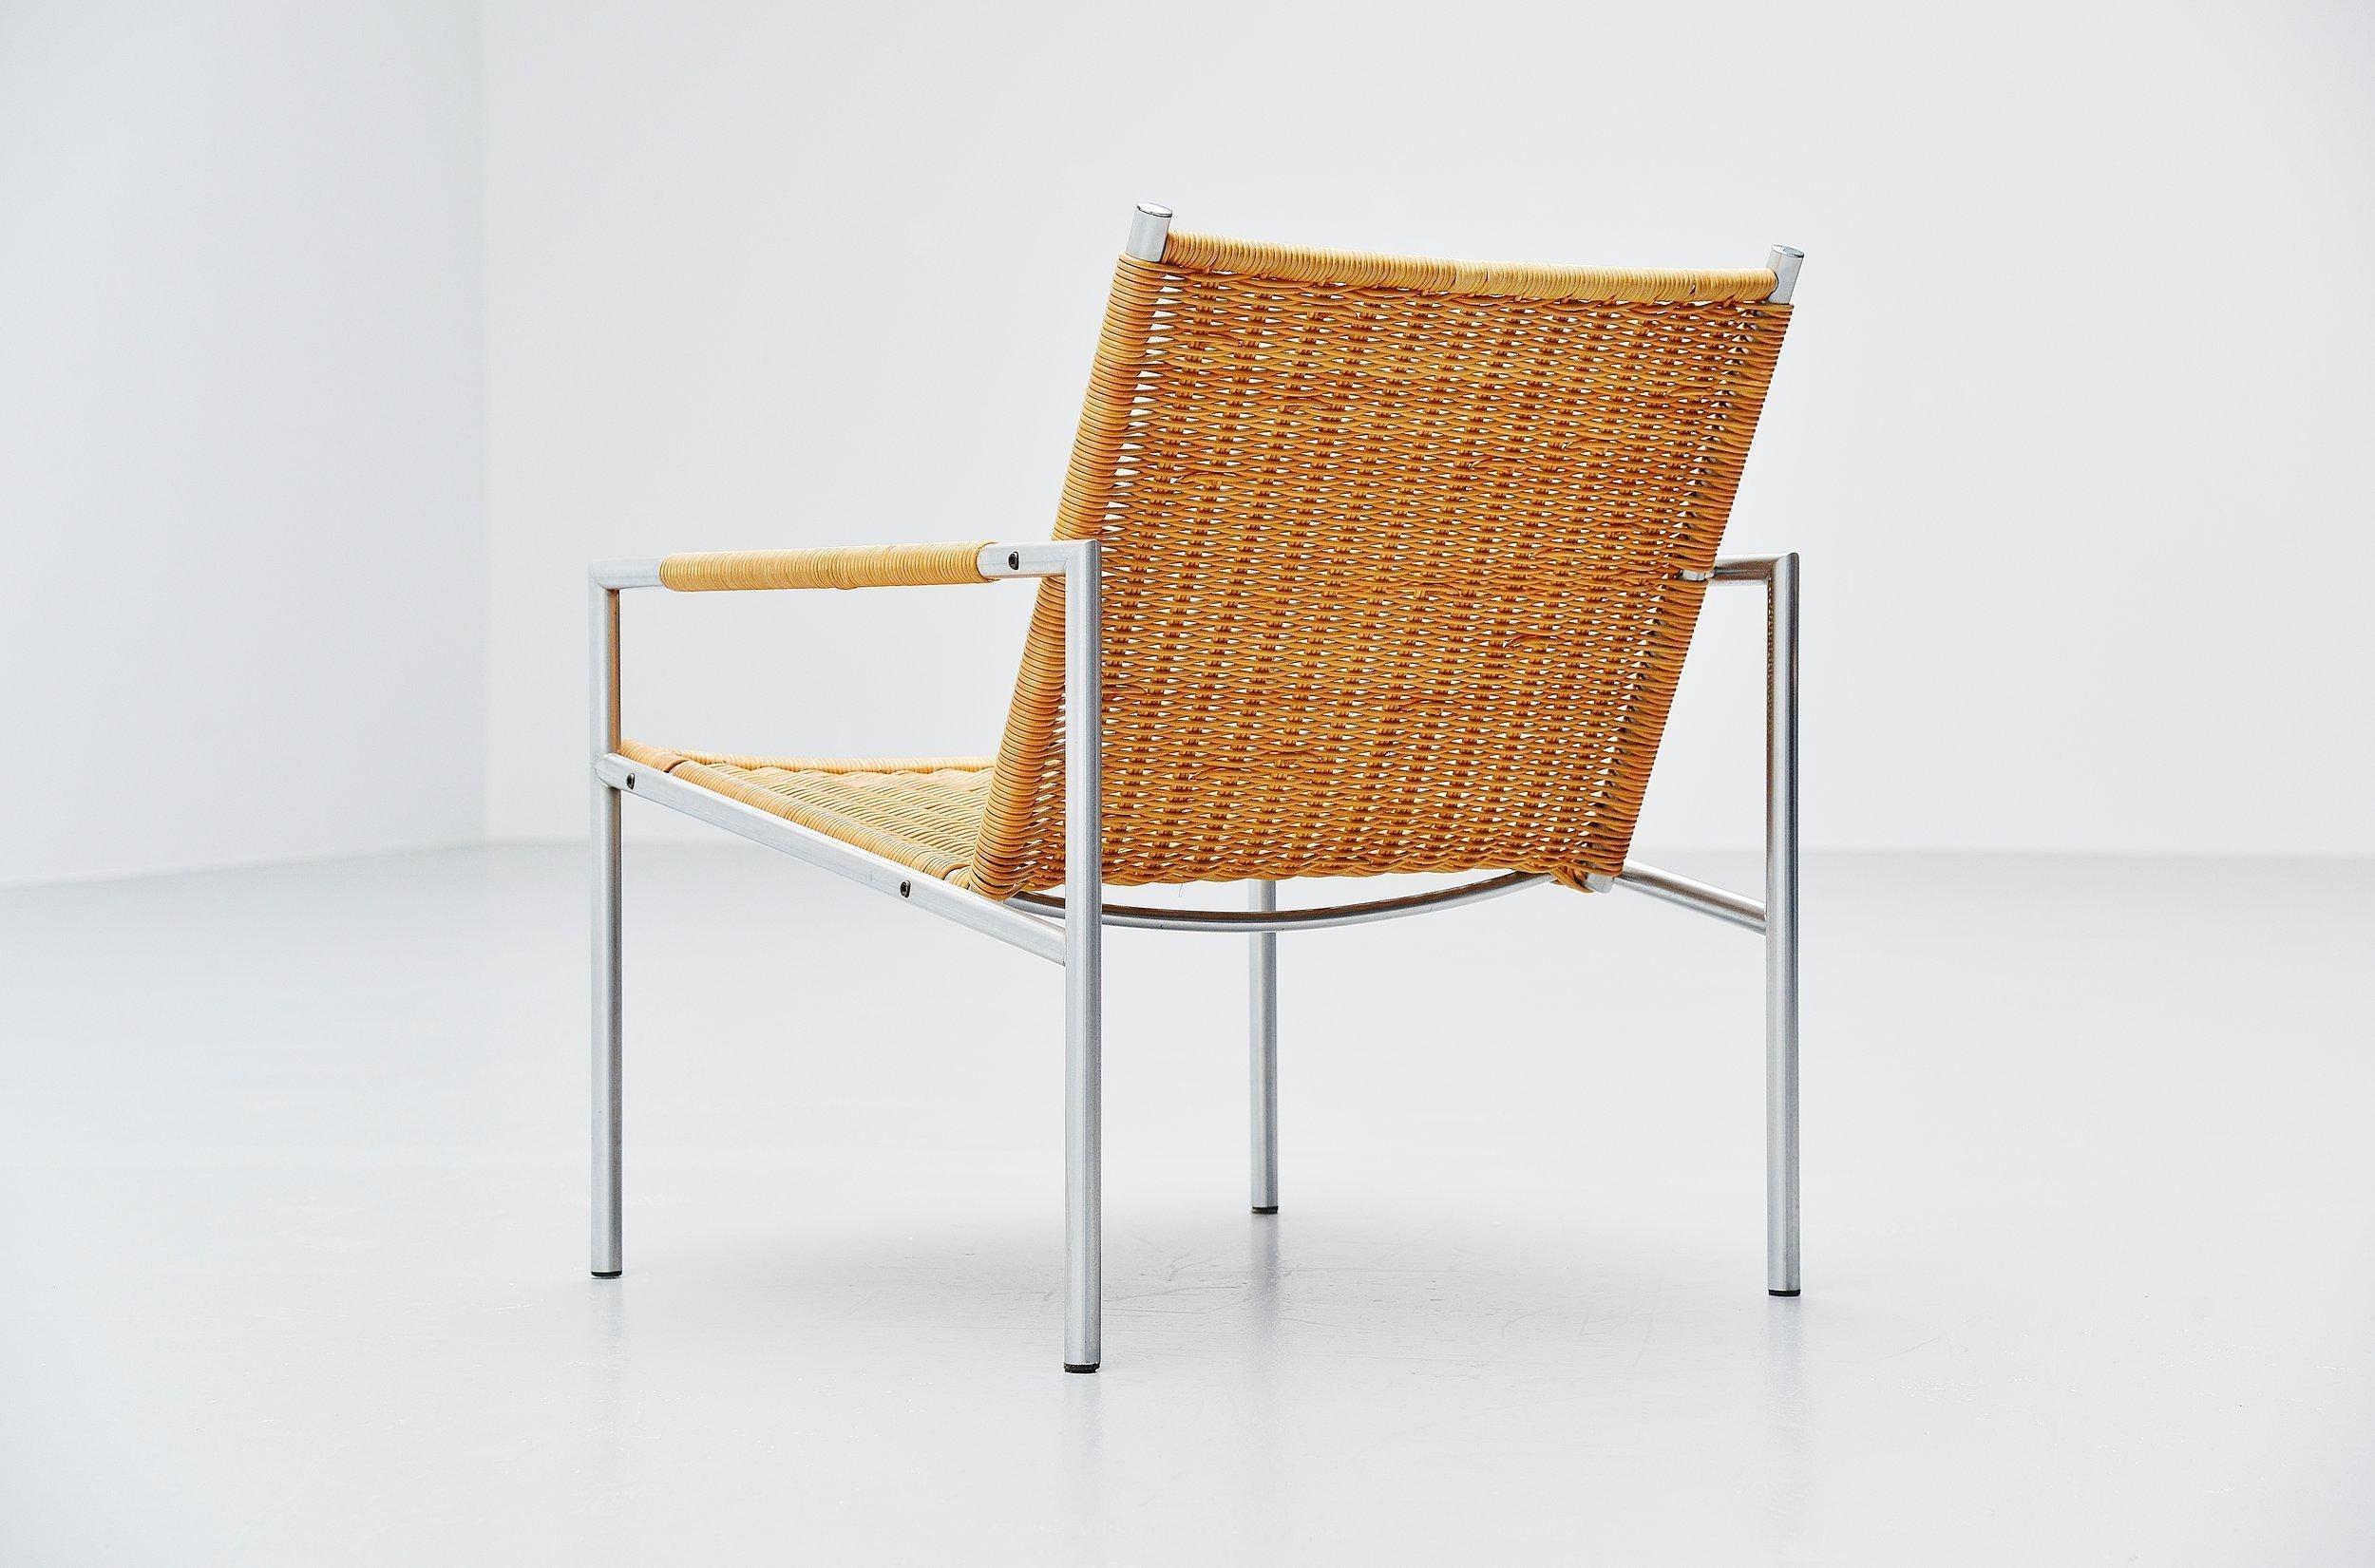 Chaise longue moderniste modèle SZ01 conçue par Martin Visser pour 't Spectrum, Hollande, 1960. La chaise a un cadre tubulaire en acier brossé et de très belles finitions pour les sièges et les accoudoirs en rotin tressé. La canne a une belle patine